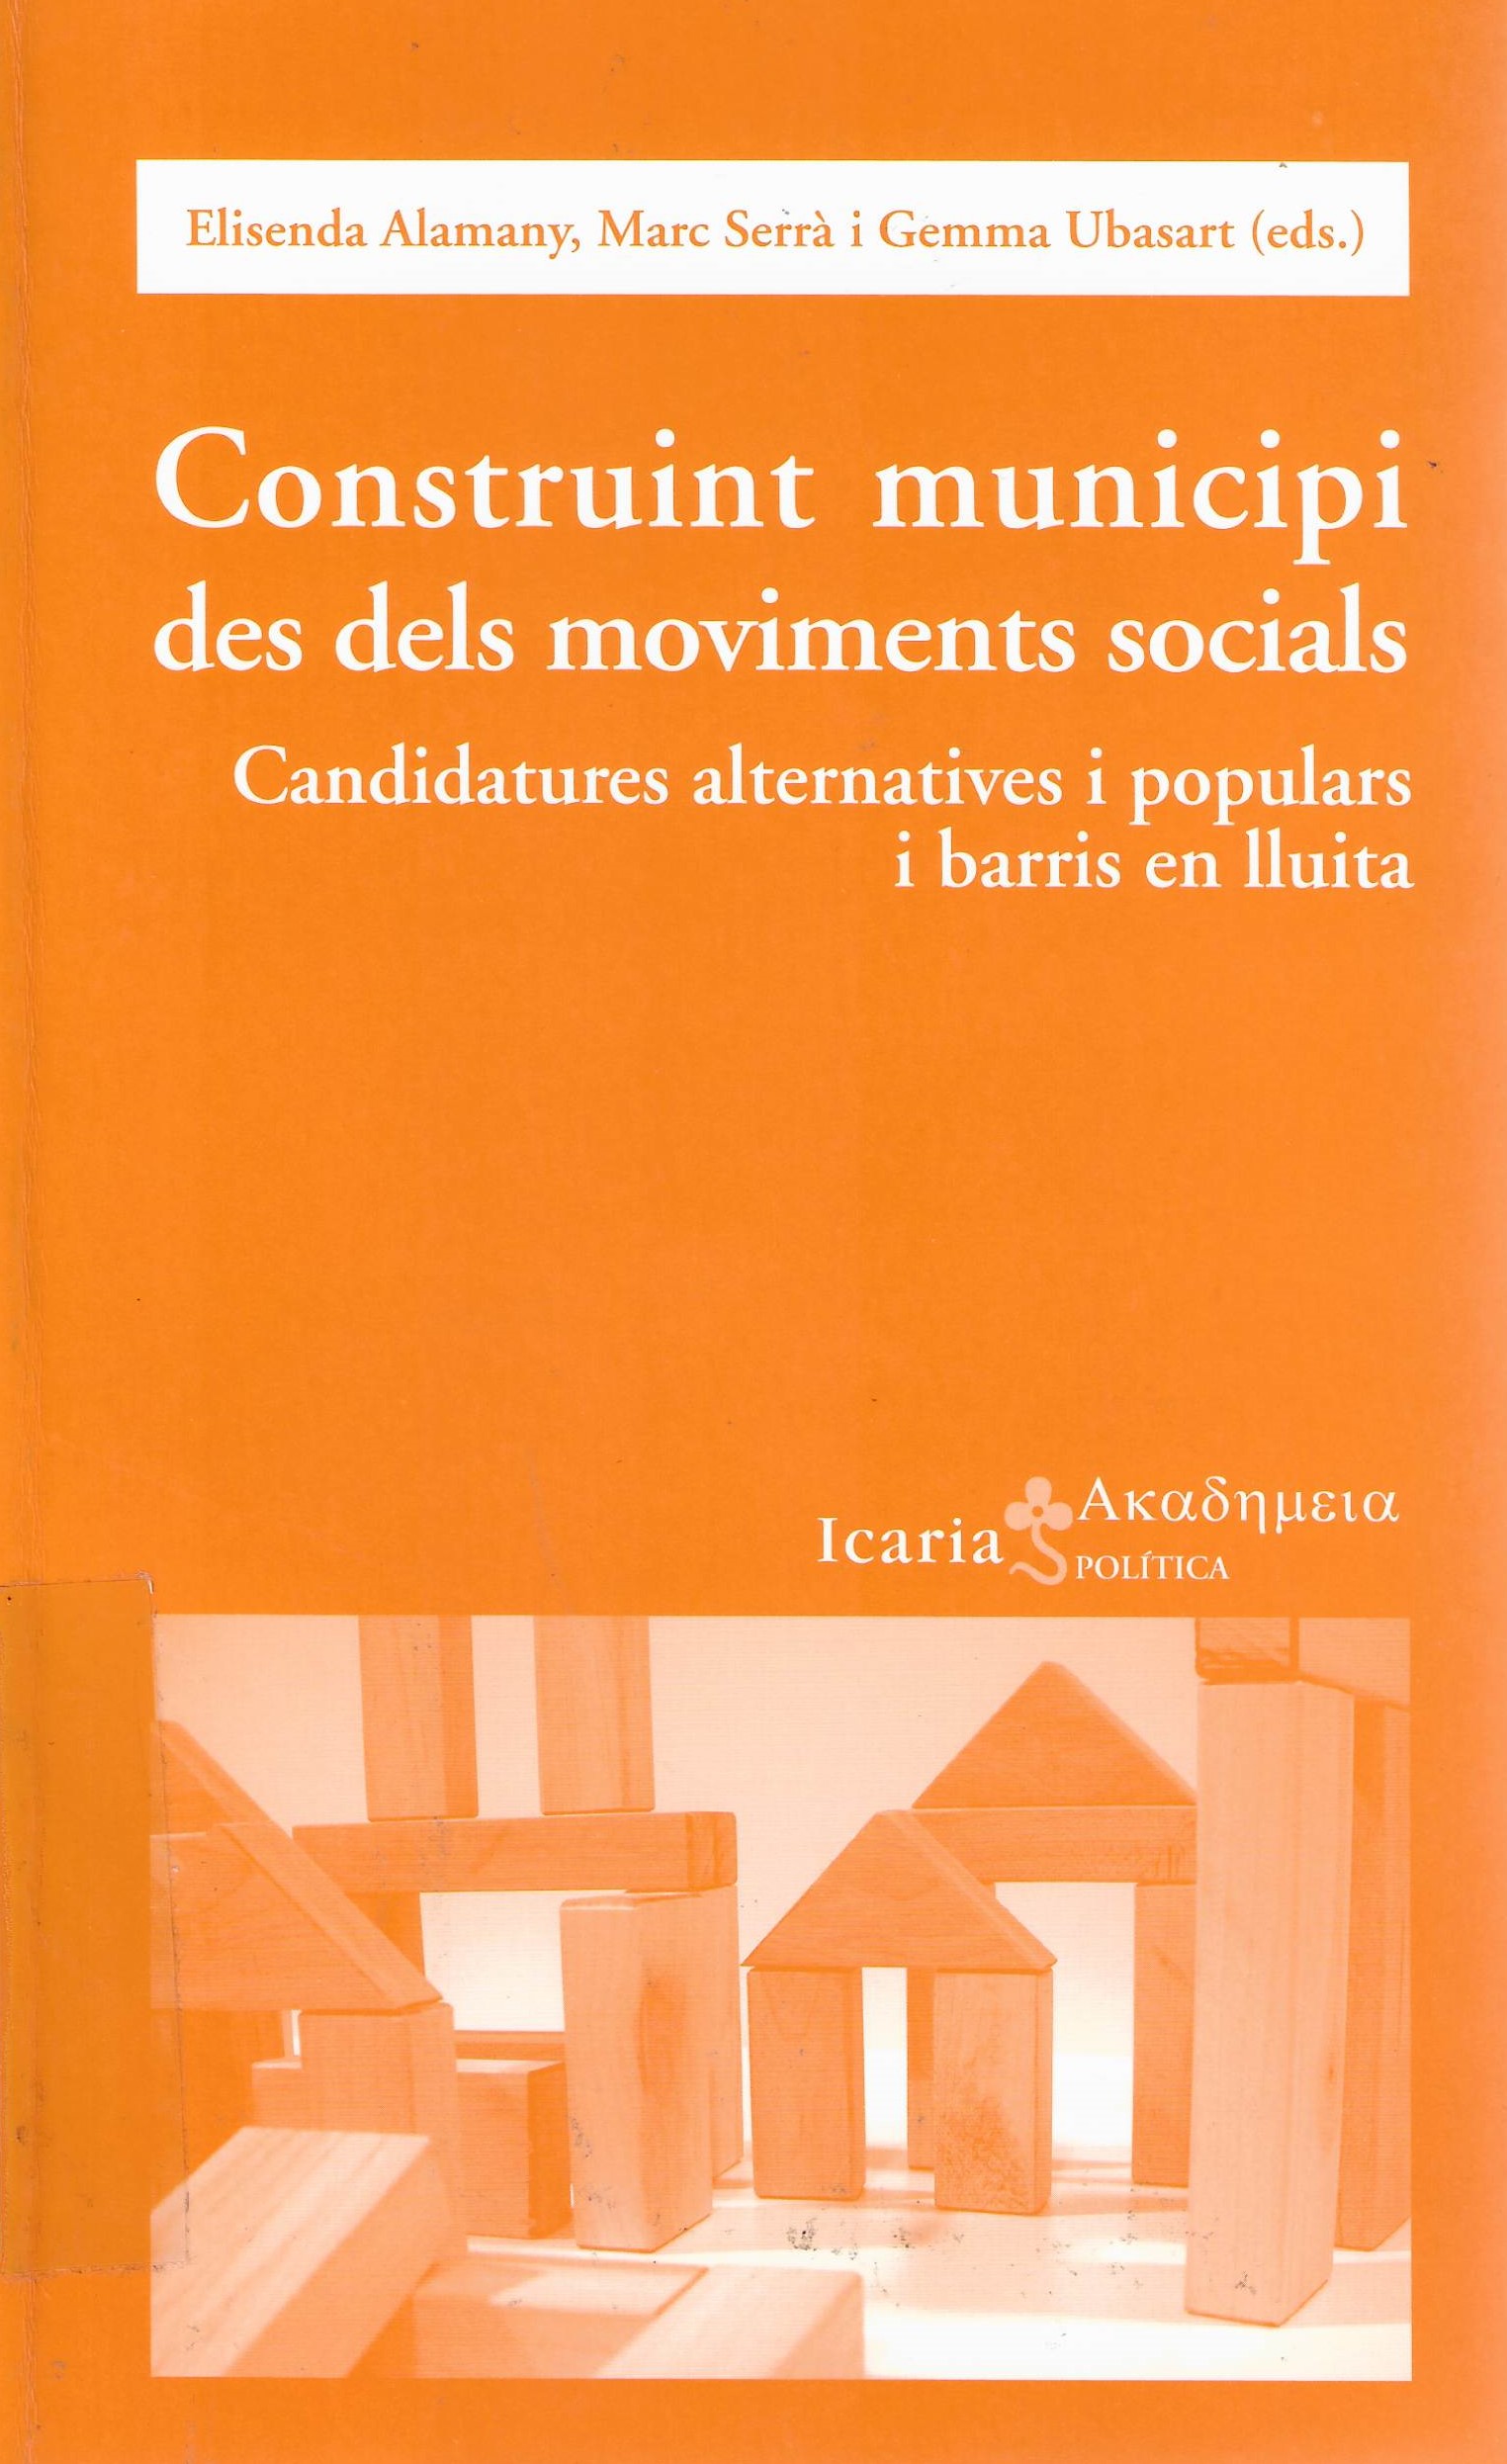 Imagen de portada del libro Construint municipi des dels moviments socials